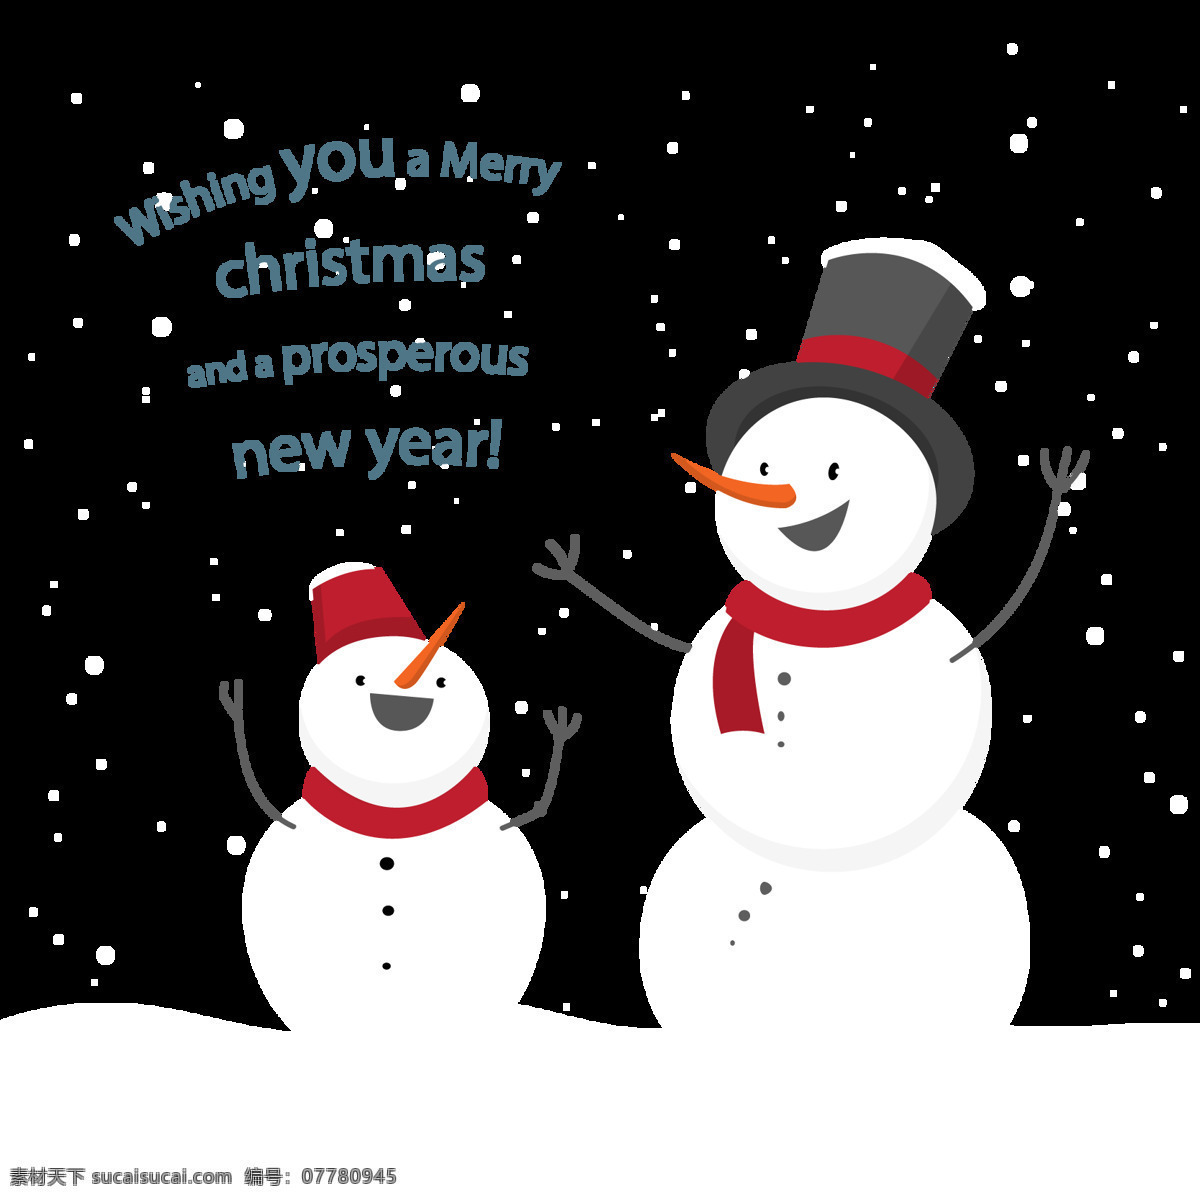 卡通 圣诞 雪人 元素 冬季元素 堆雪人 卡通雪人 可爱雪人 圣诞png 圣诞免抠元素 圣诞雪人 圣诞装扮 雪人png 雪人元素